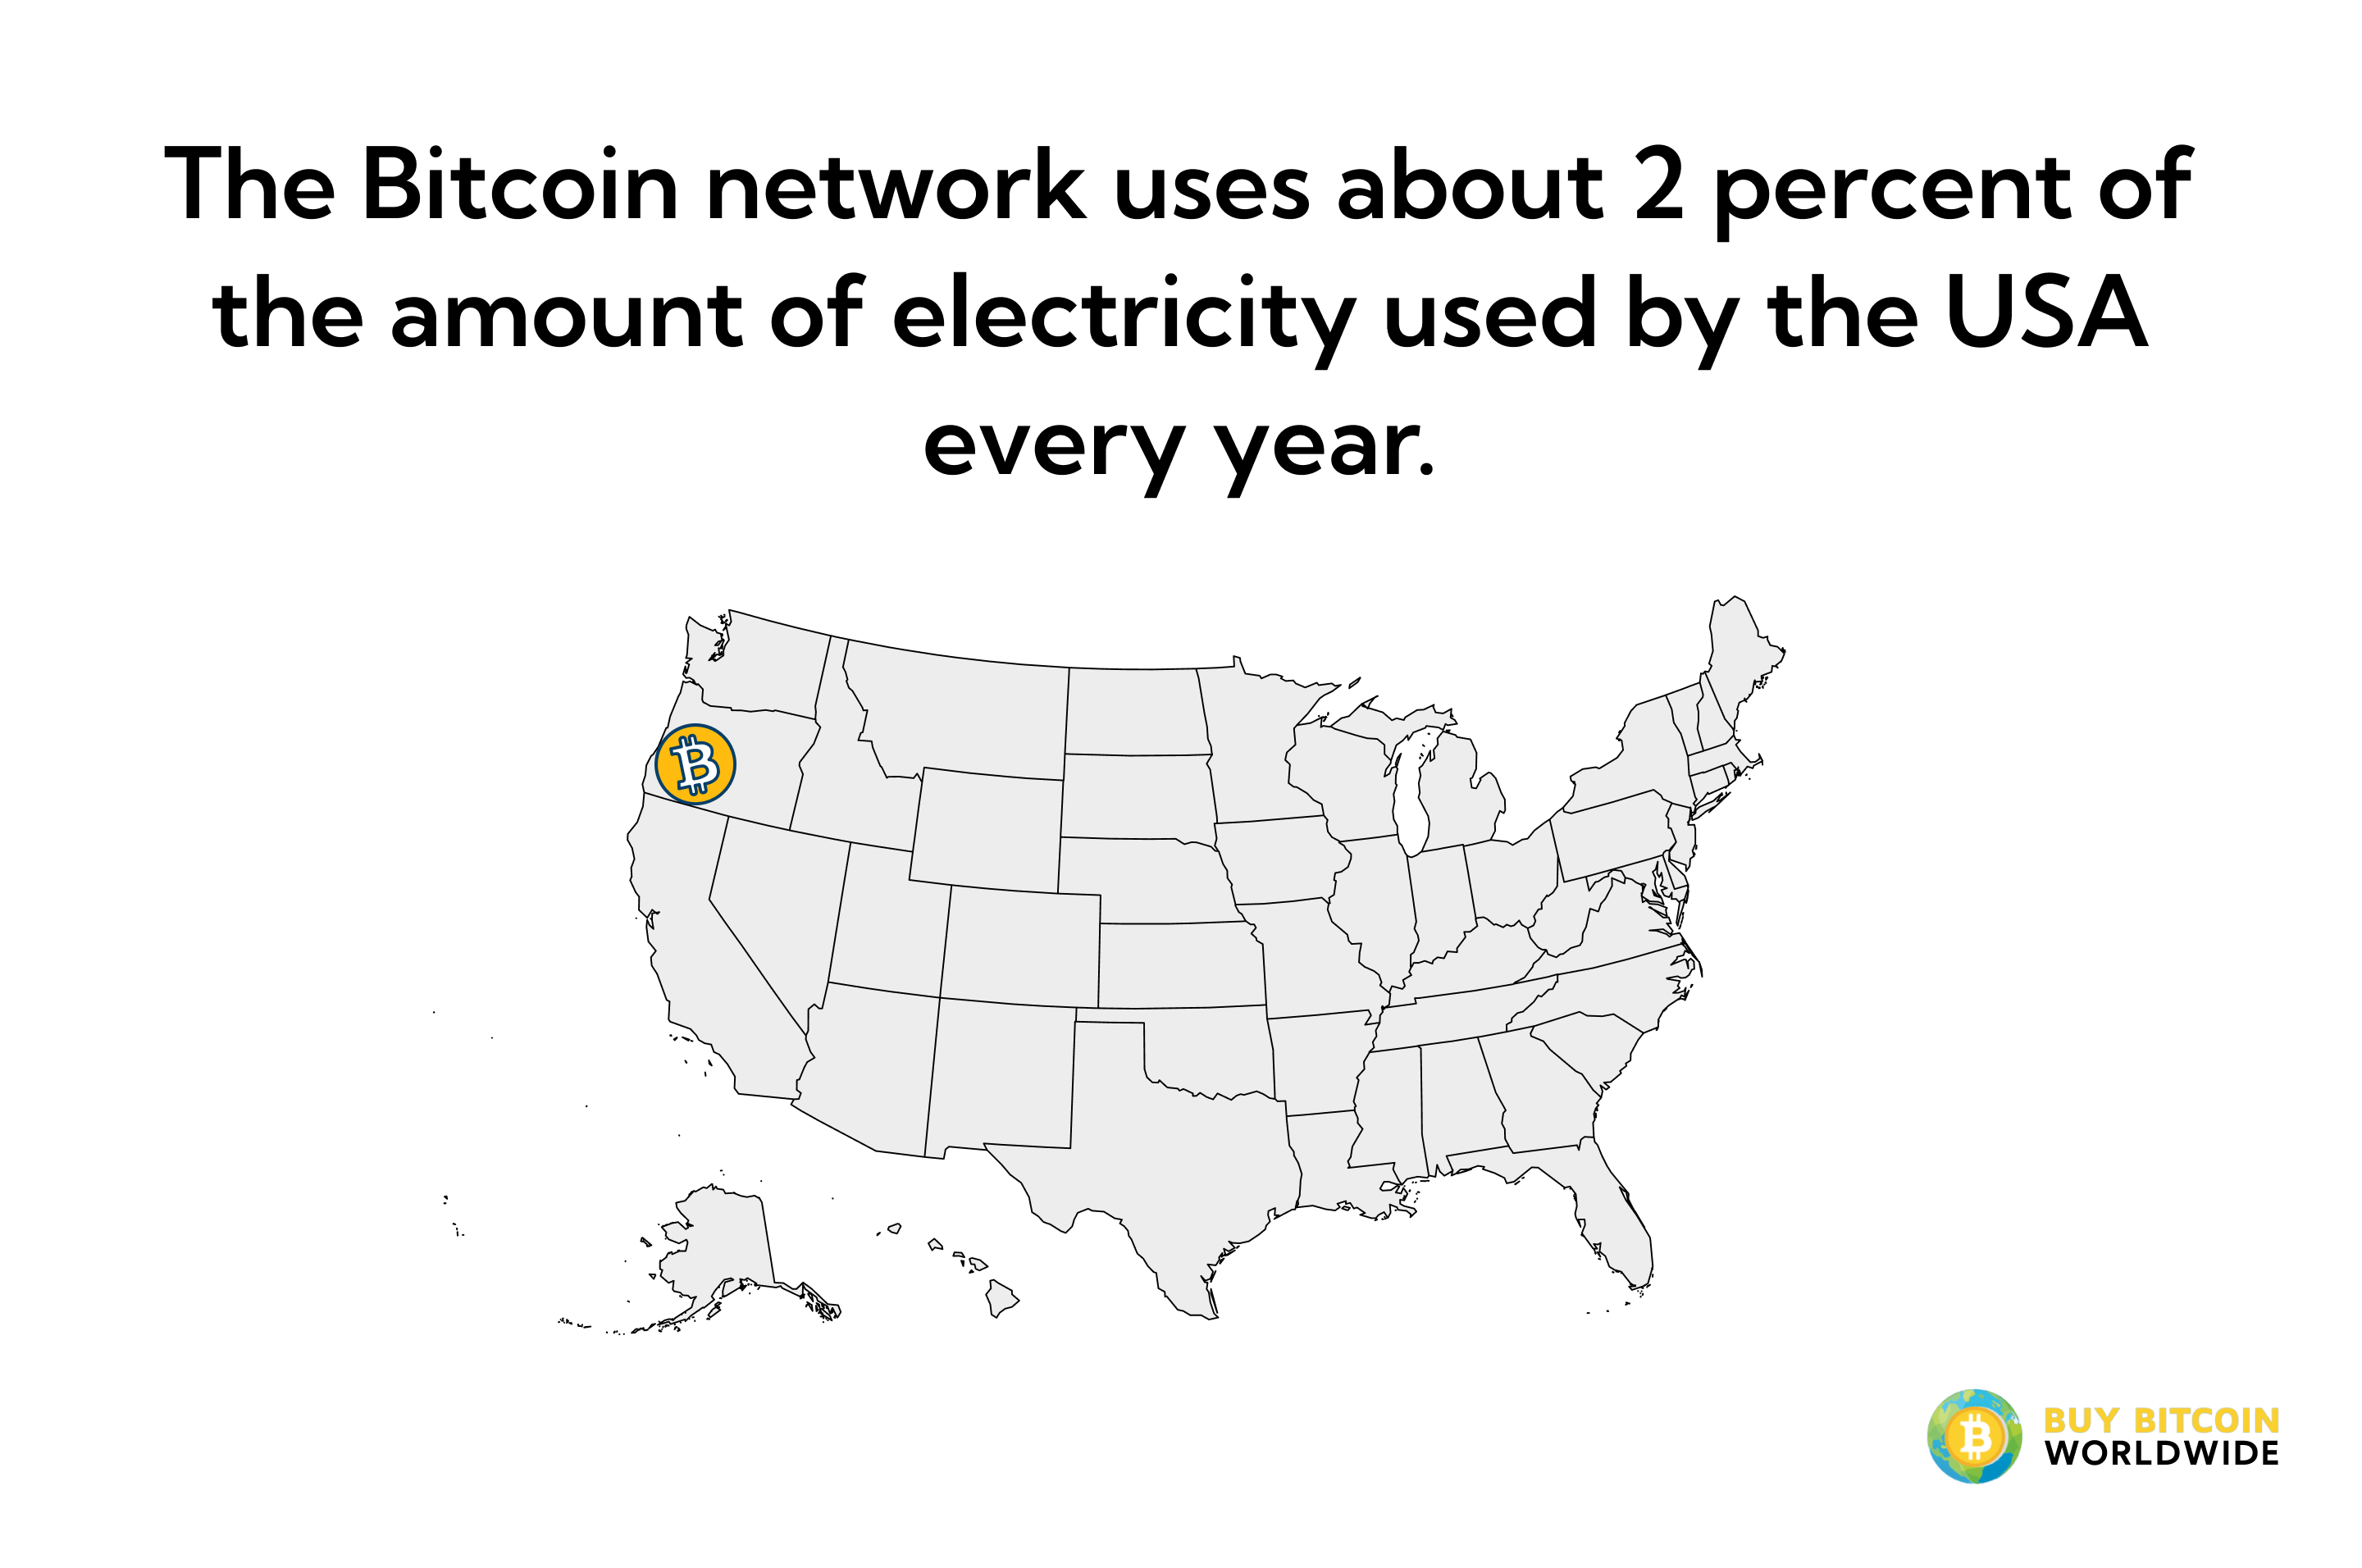 bitcoin electricity consumption vs usa